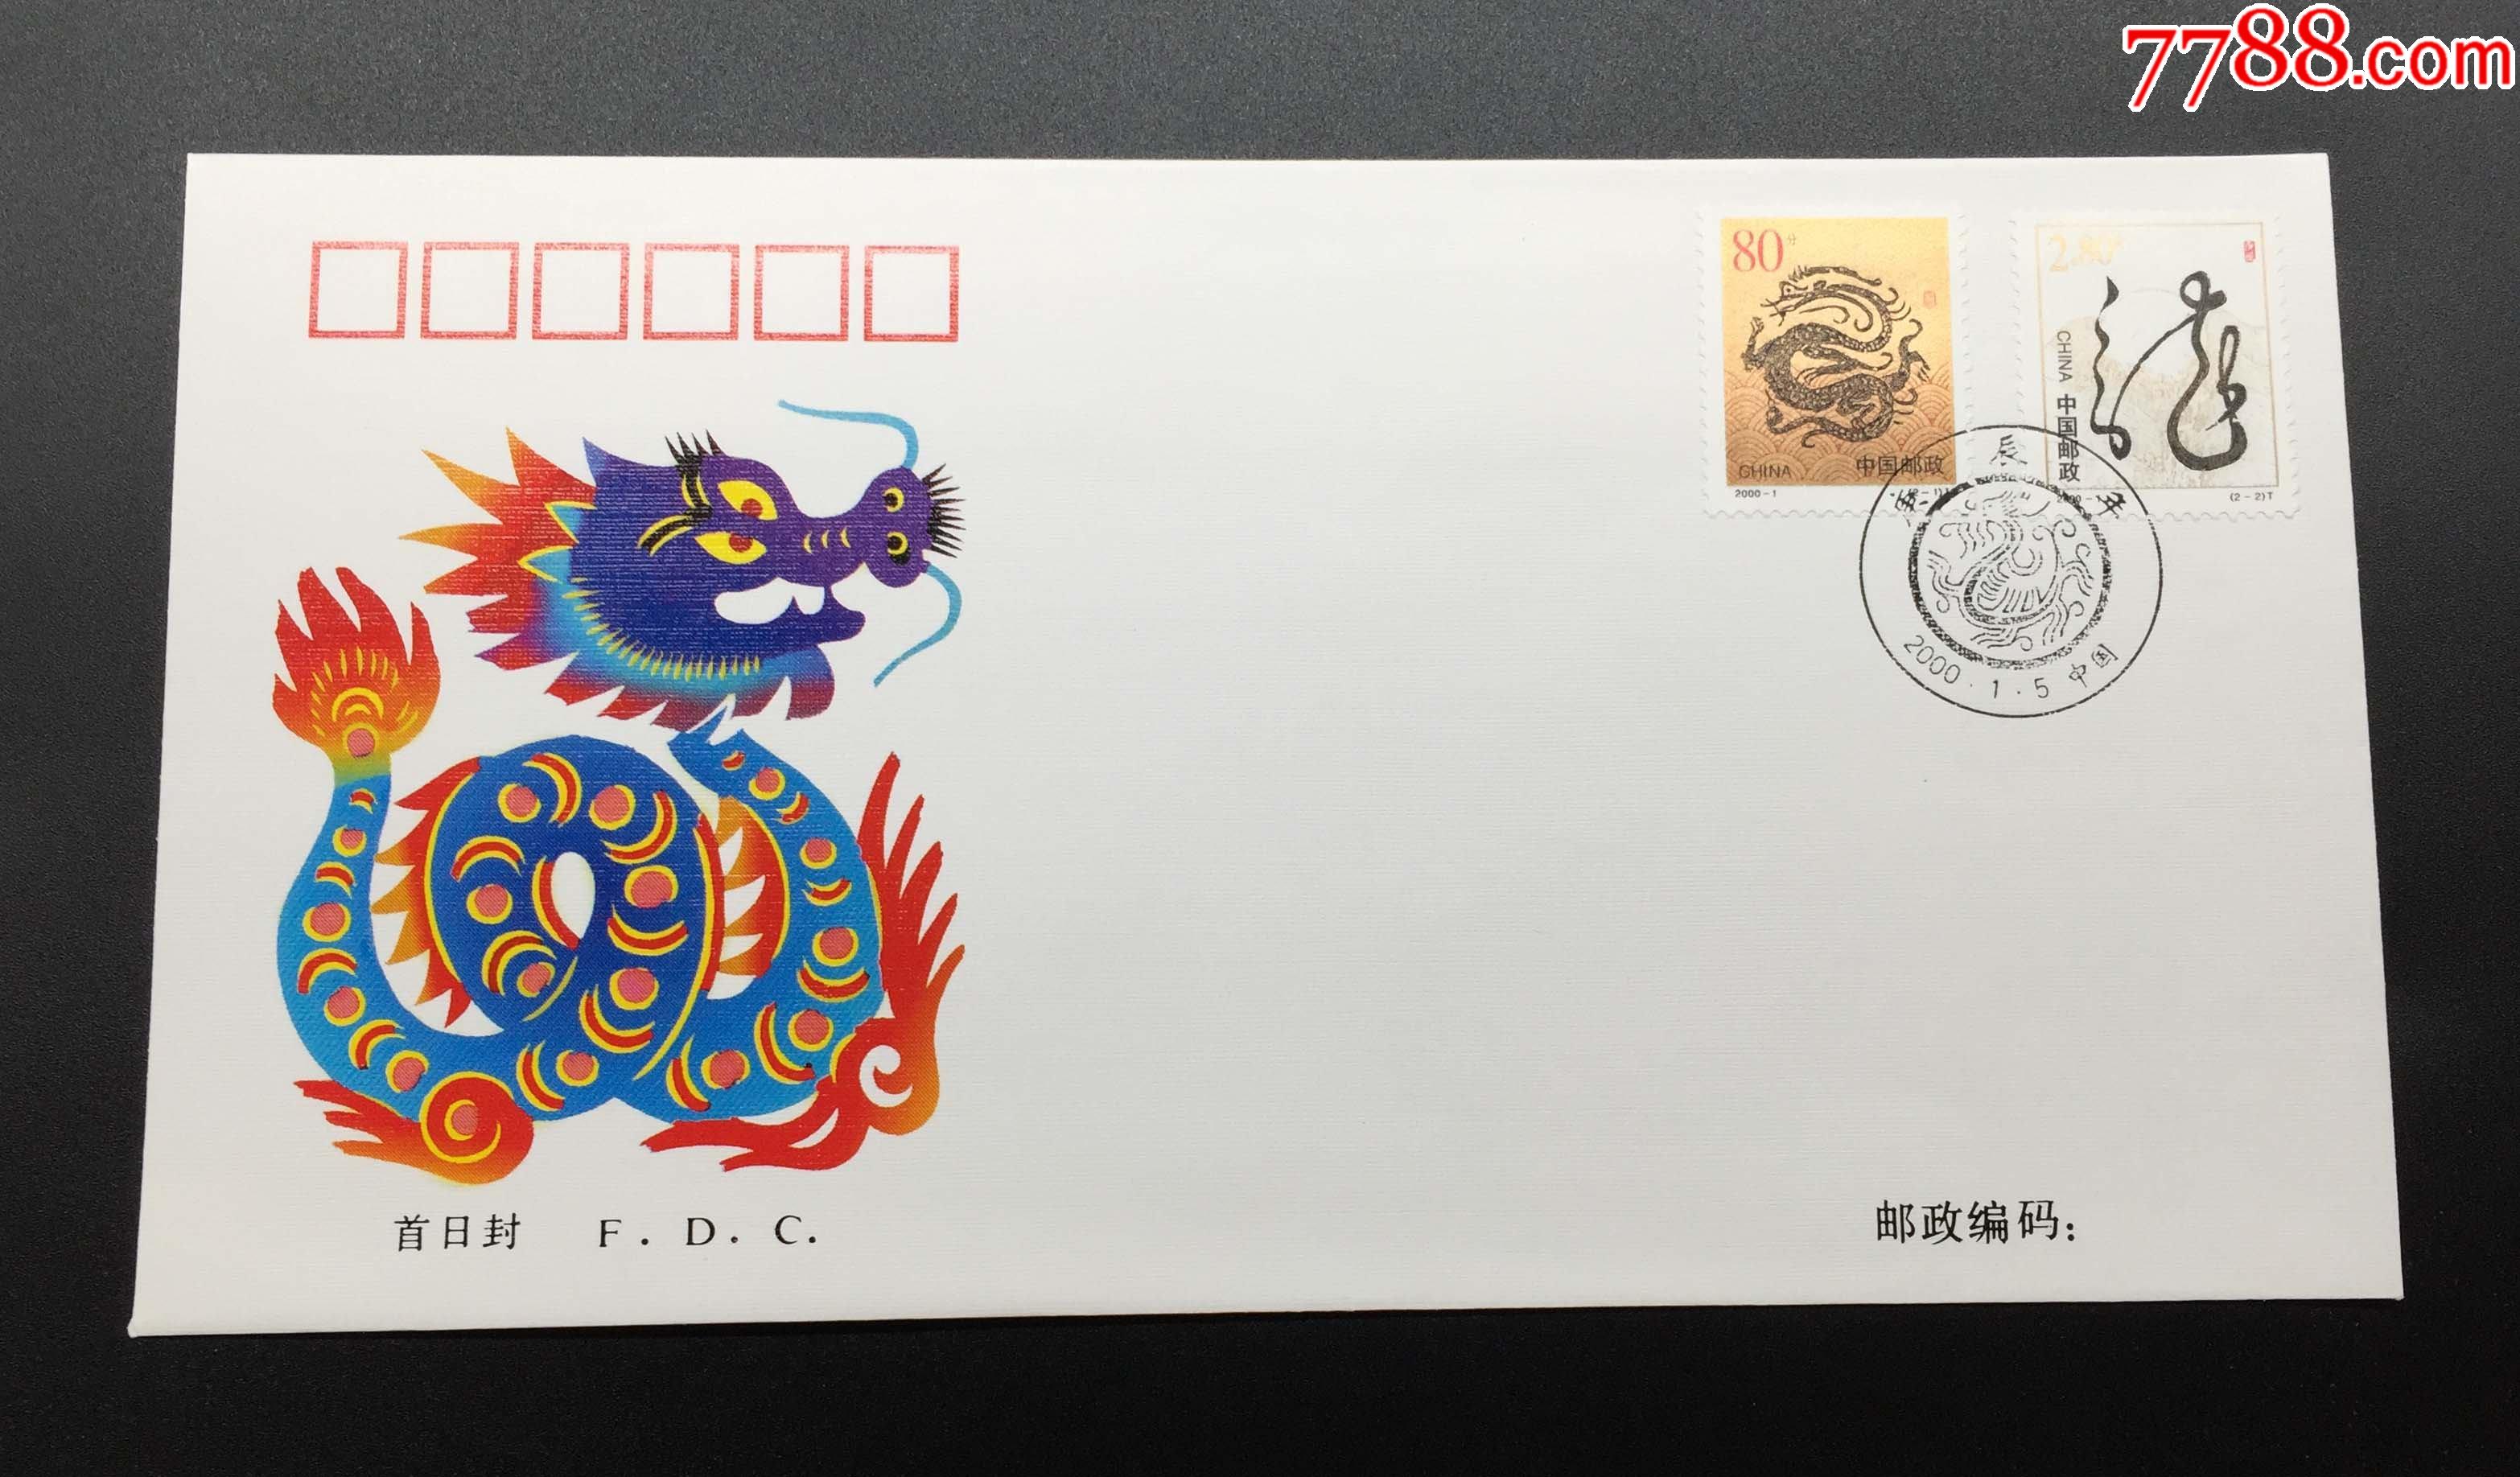 2000-1二轮生肖龙邮票总公司首日封,品相非常好,金粉亮.